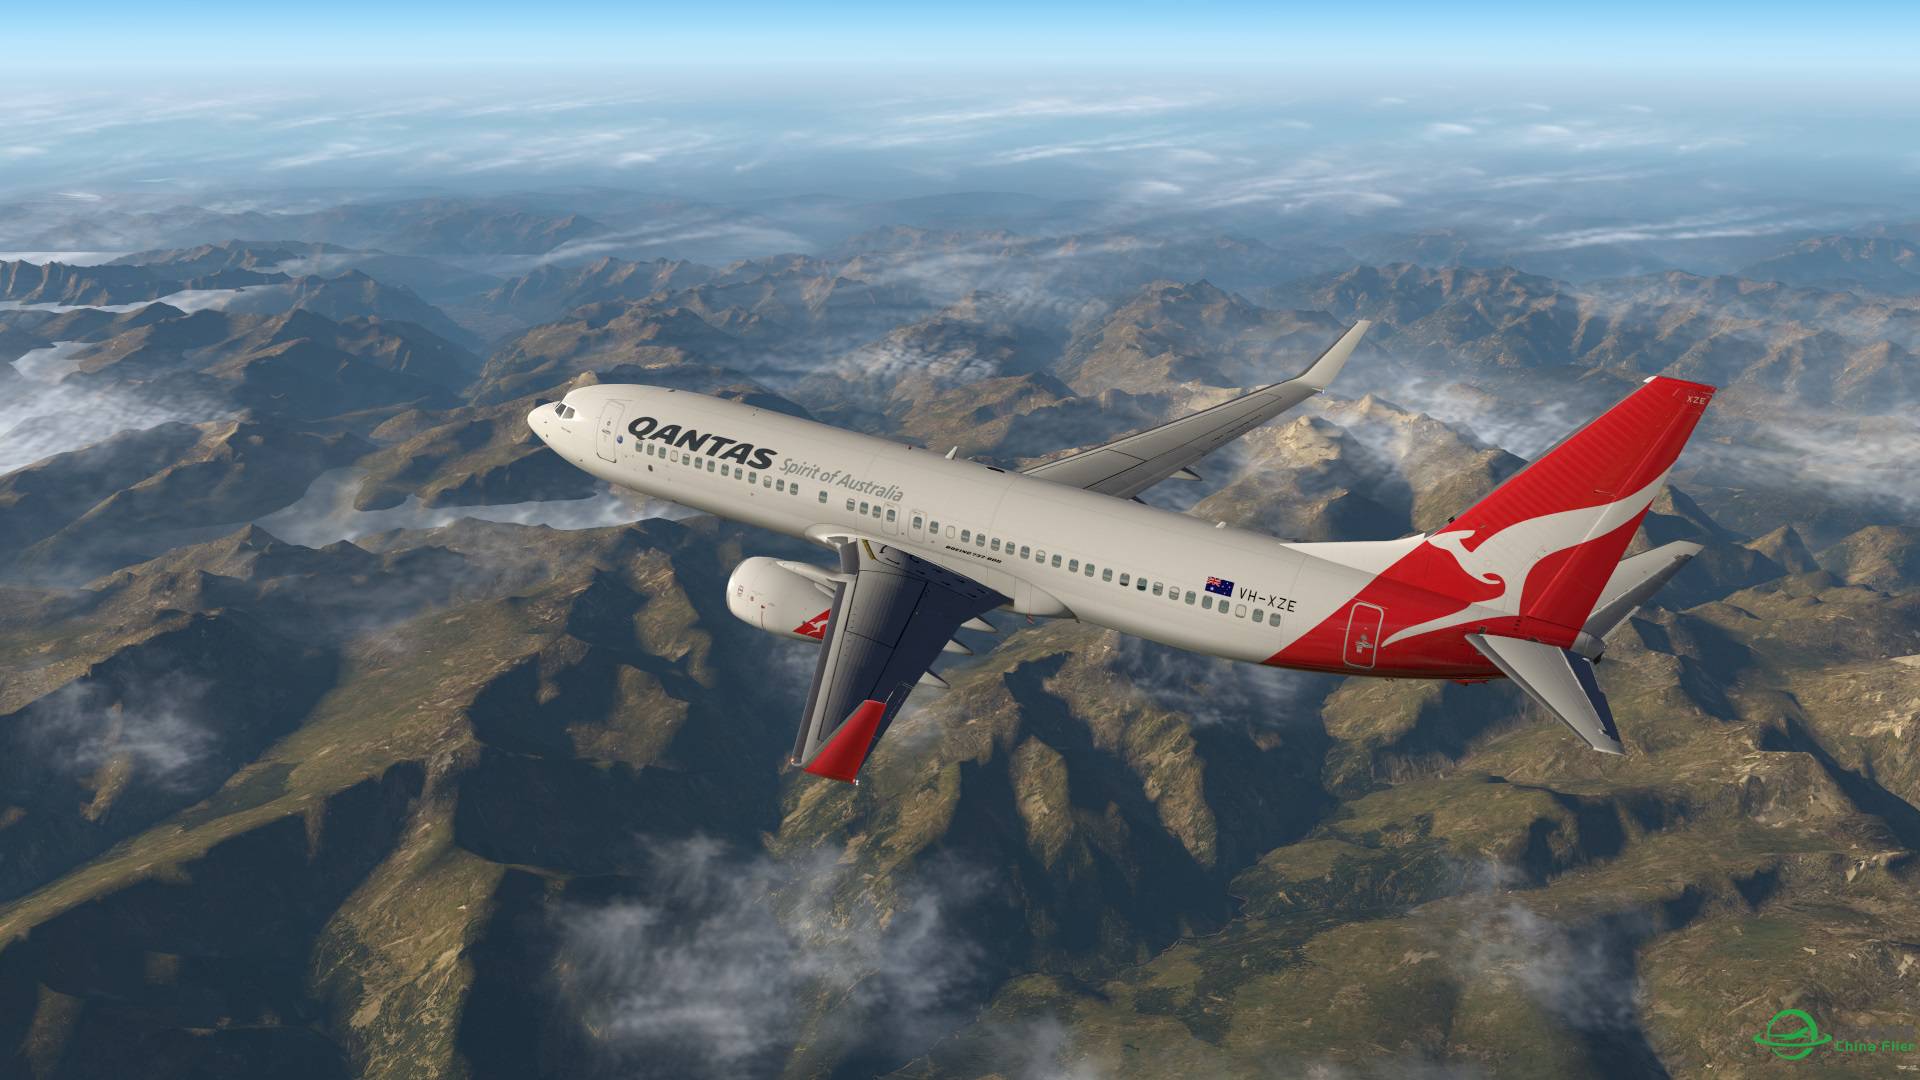 飞跃阿尔卑斯山 X-plane 11-1137 